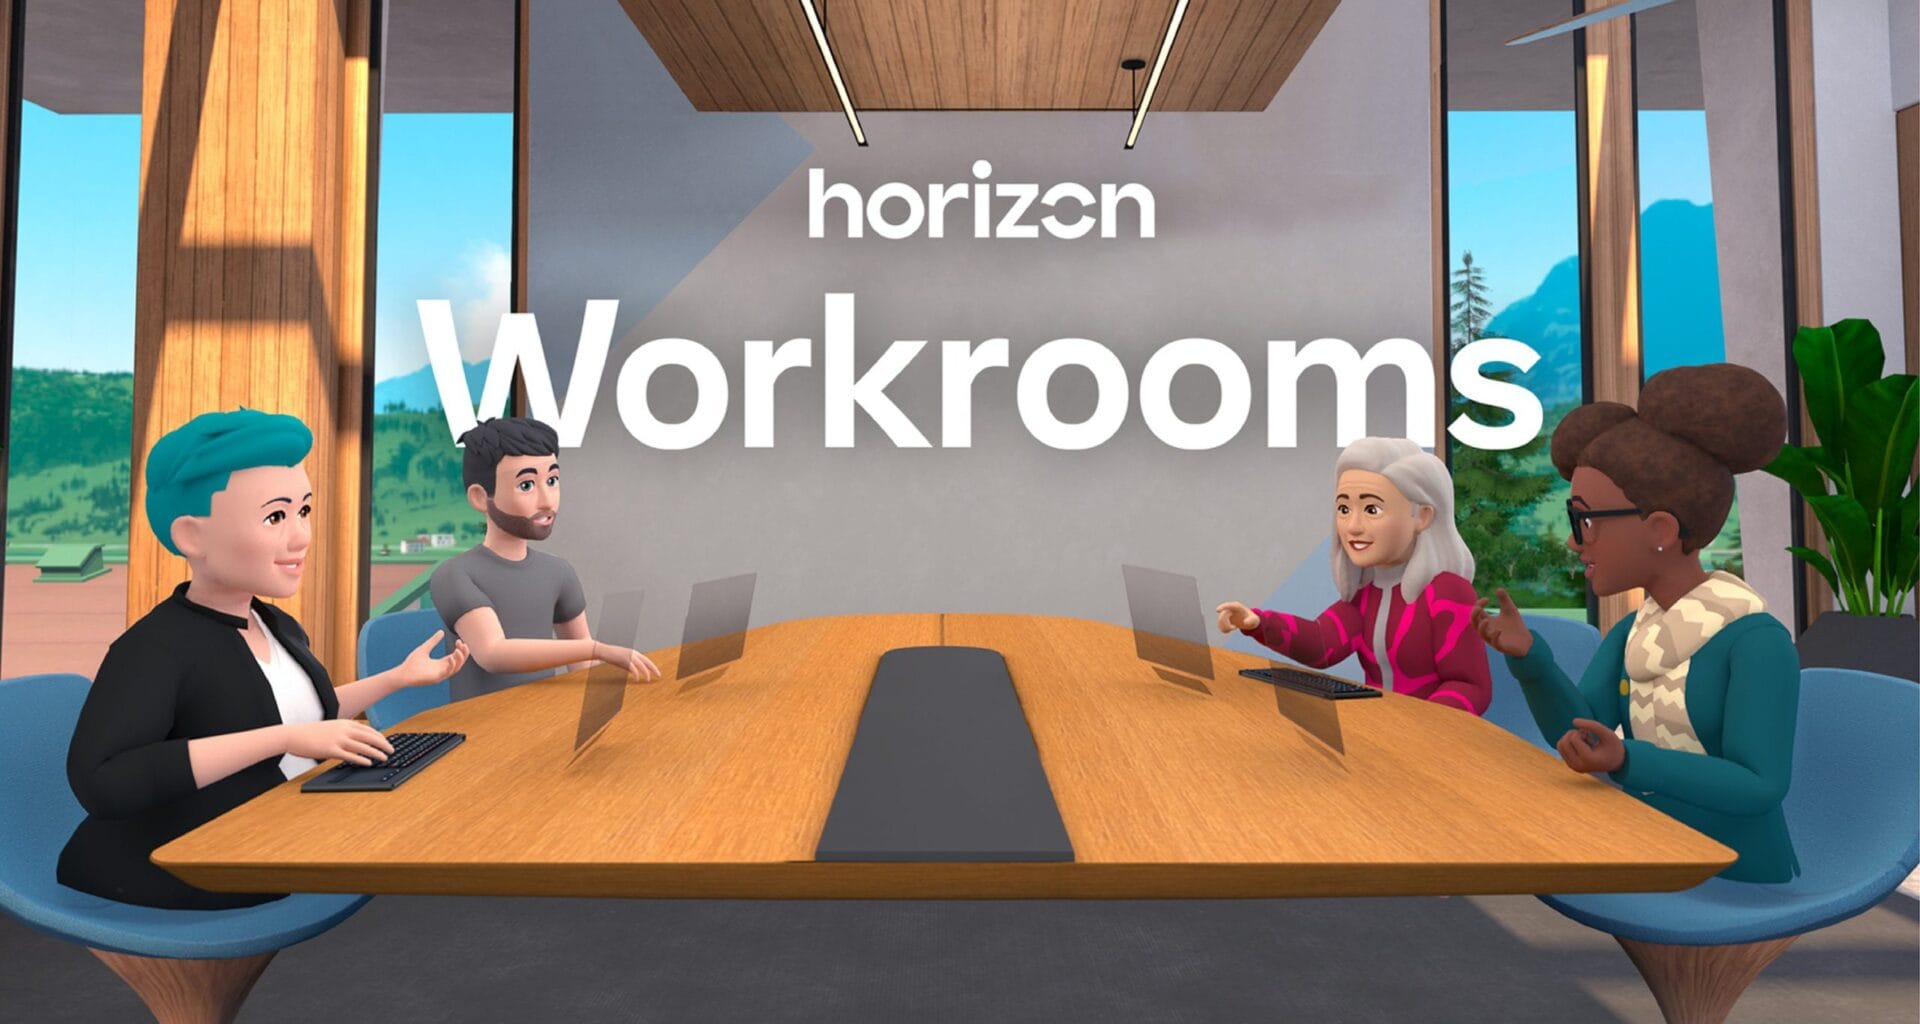 Como criar uma reunião no metaverso usando o horizon workrooms